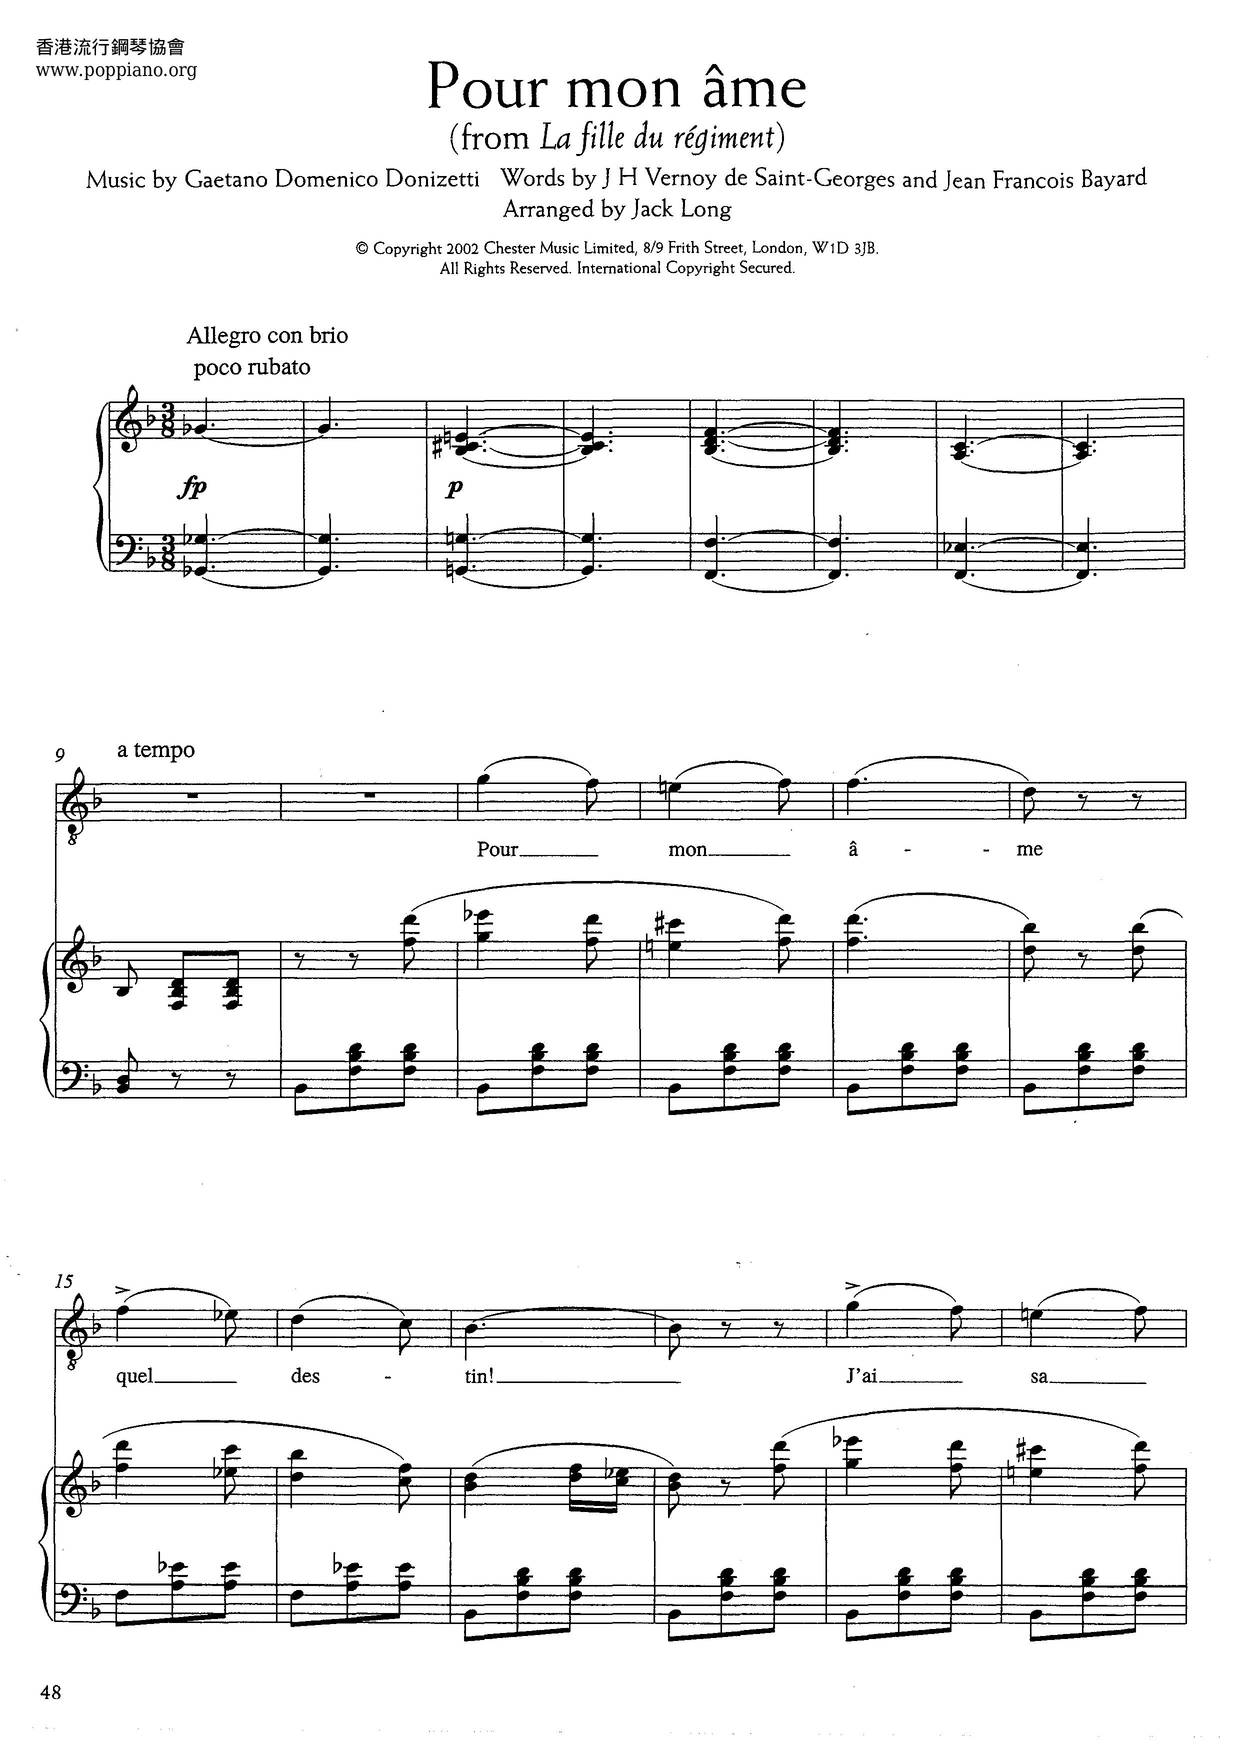 Pour Mon Ame From Lafille Du Regiment (Donizetti) Score